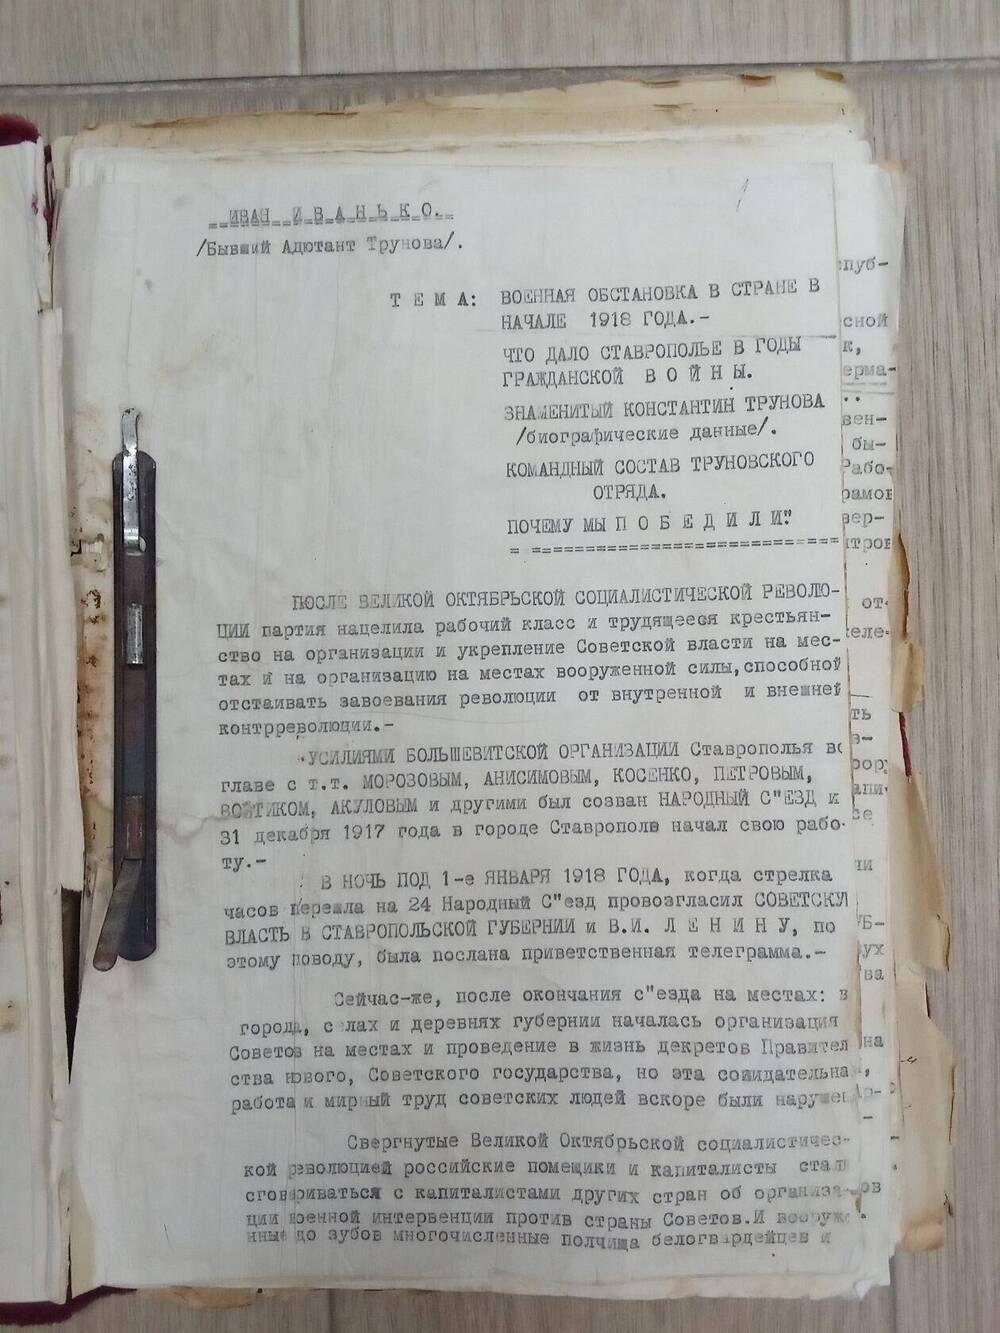 Текст выступления Иванько И.И., адьютанта К.А.Трунова, о военной обстановке в стране вначале 1918 года.